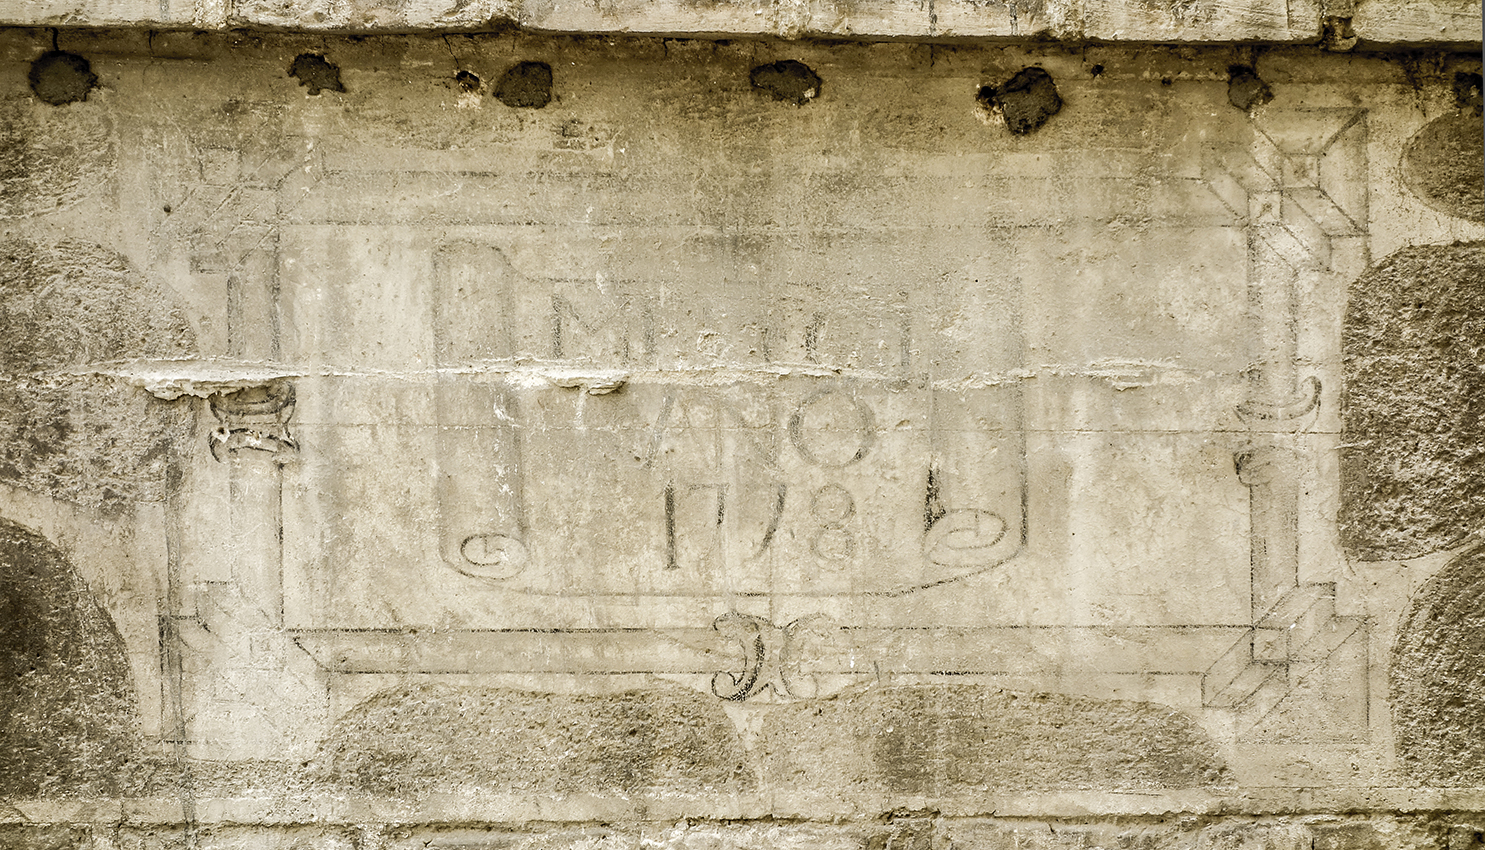 Inscripción fachada Convento San Antonio, Toledo